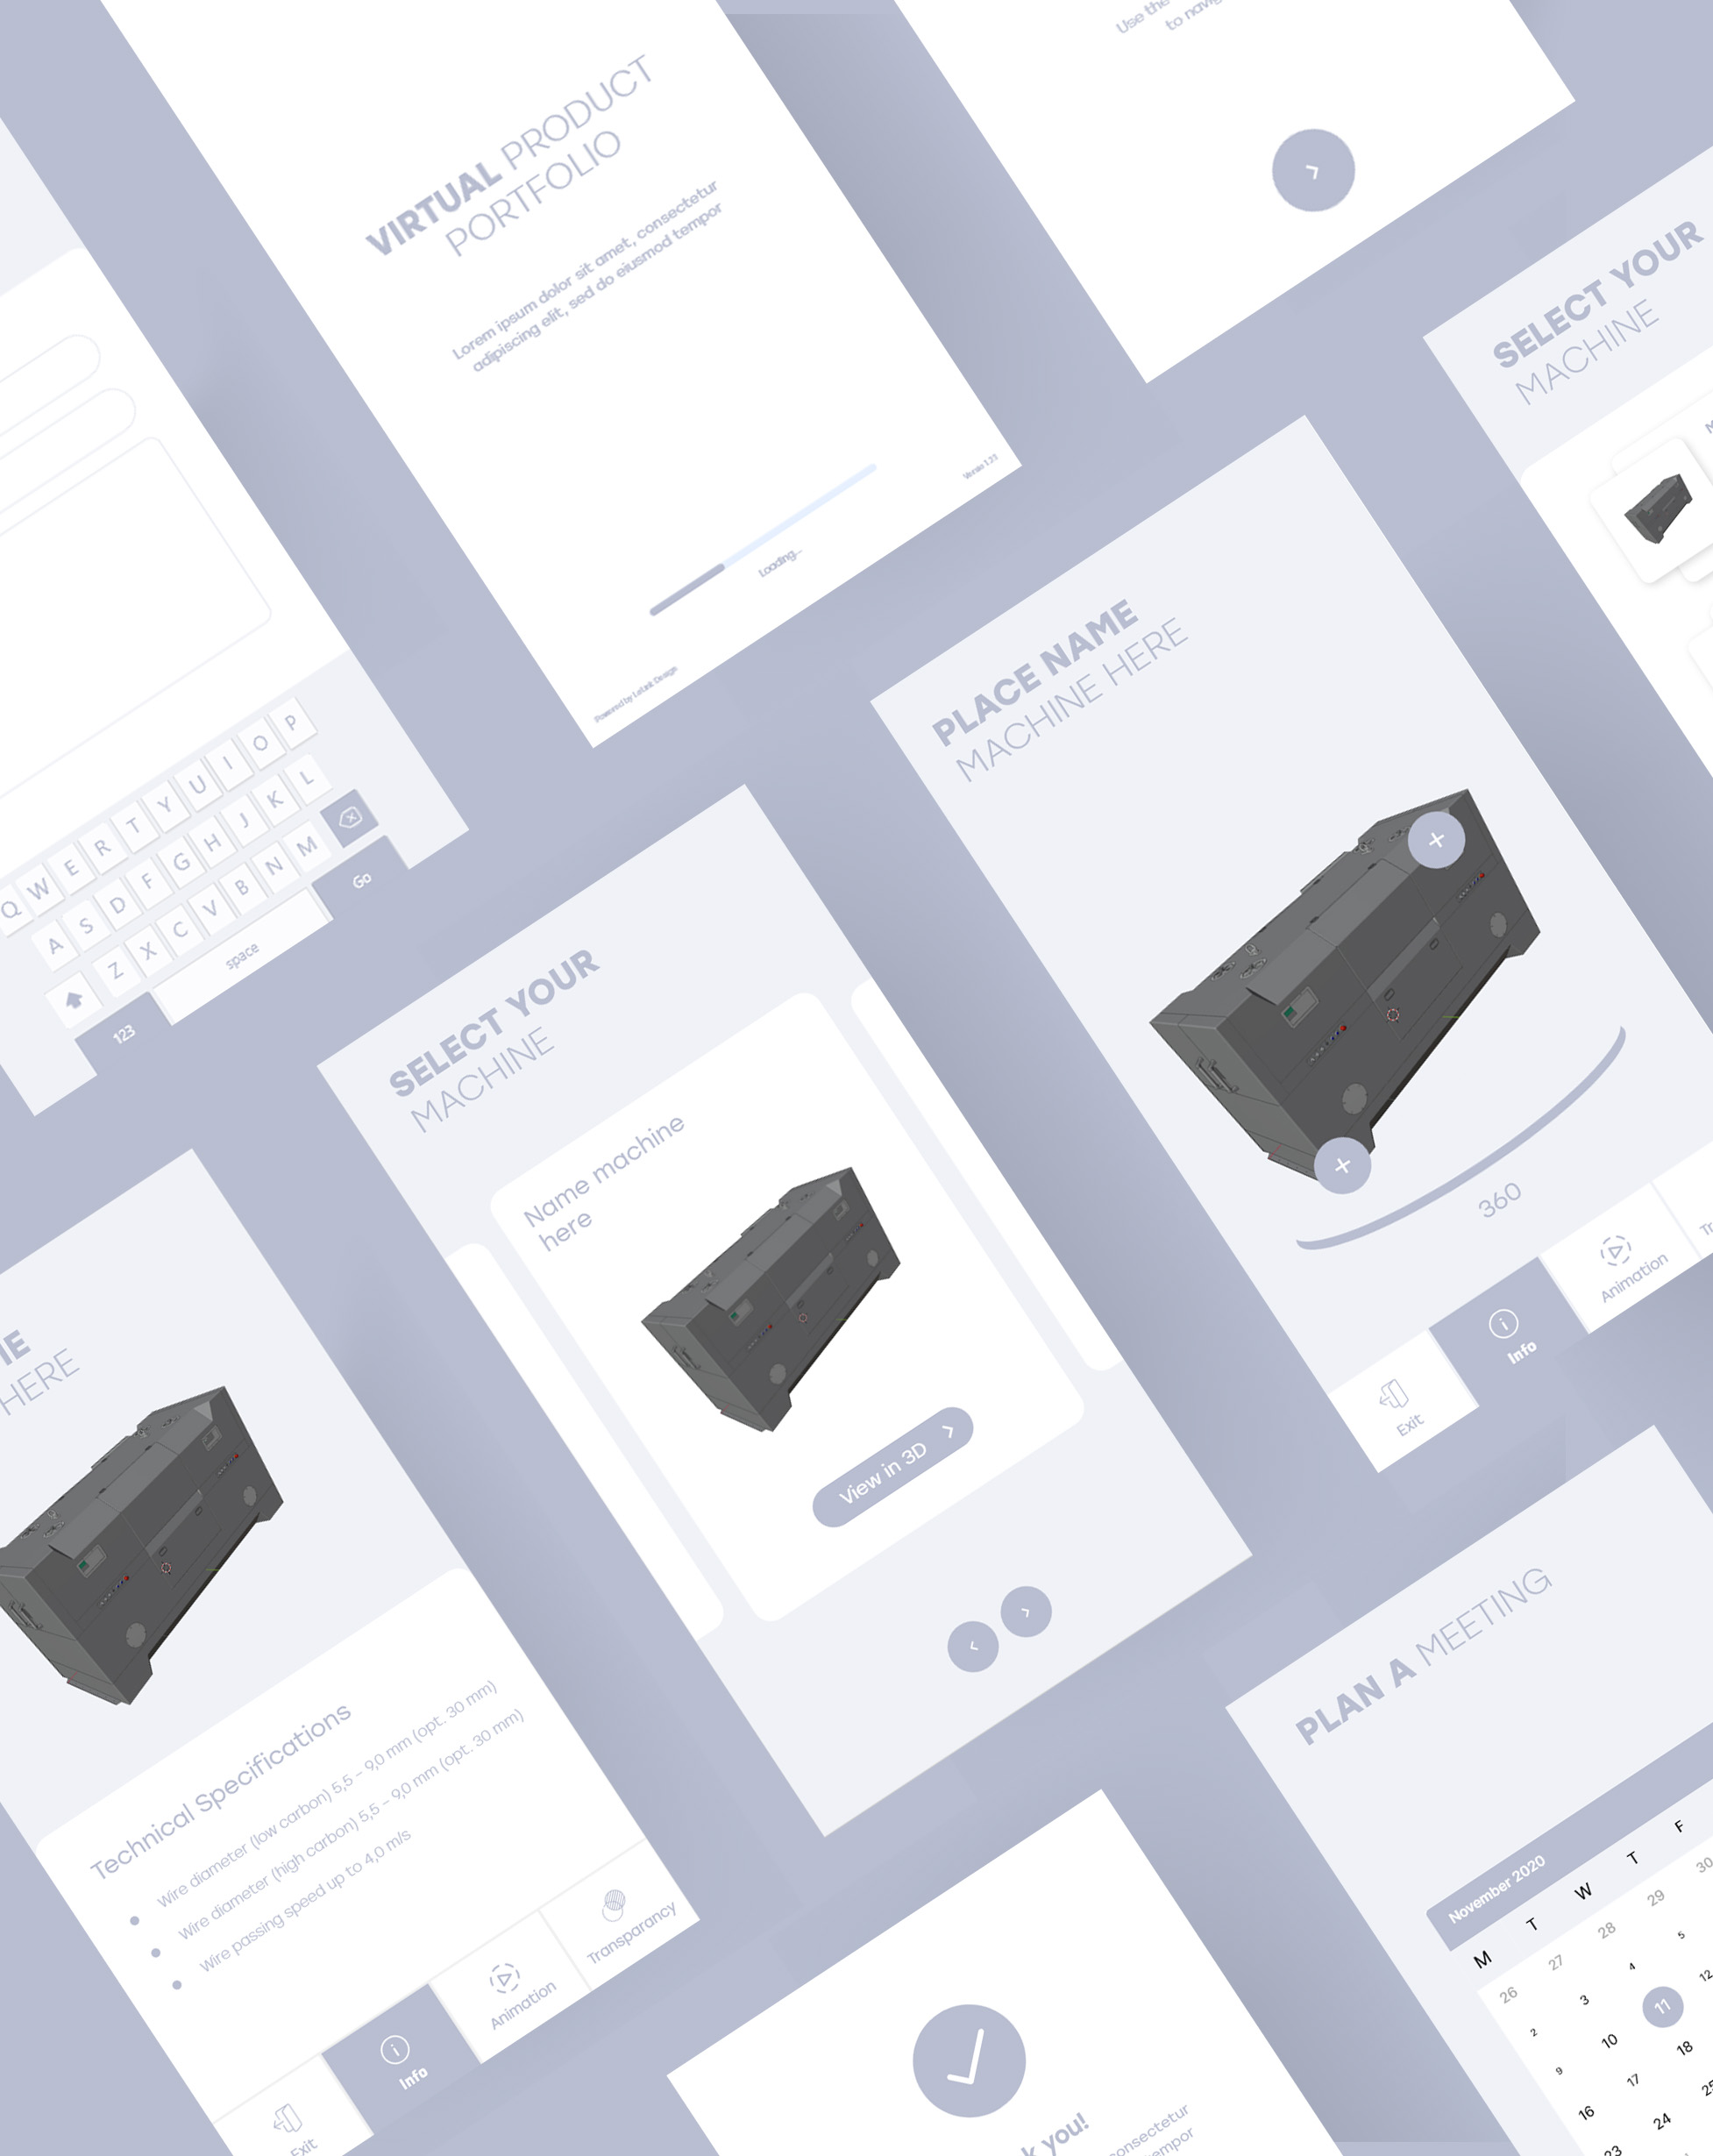 Product portfolio | Letink Design